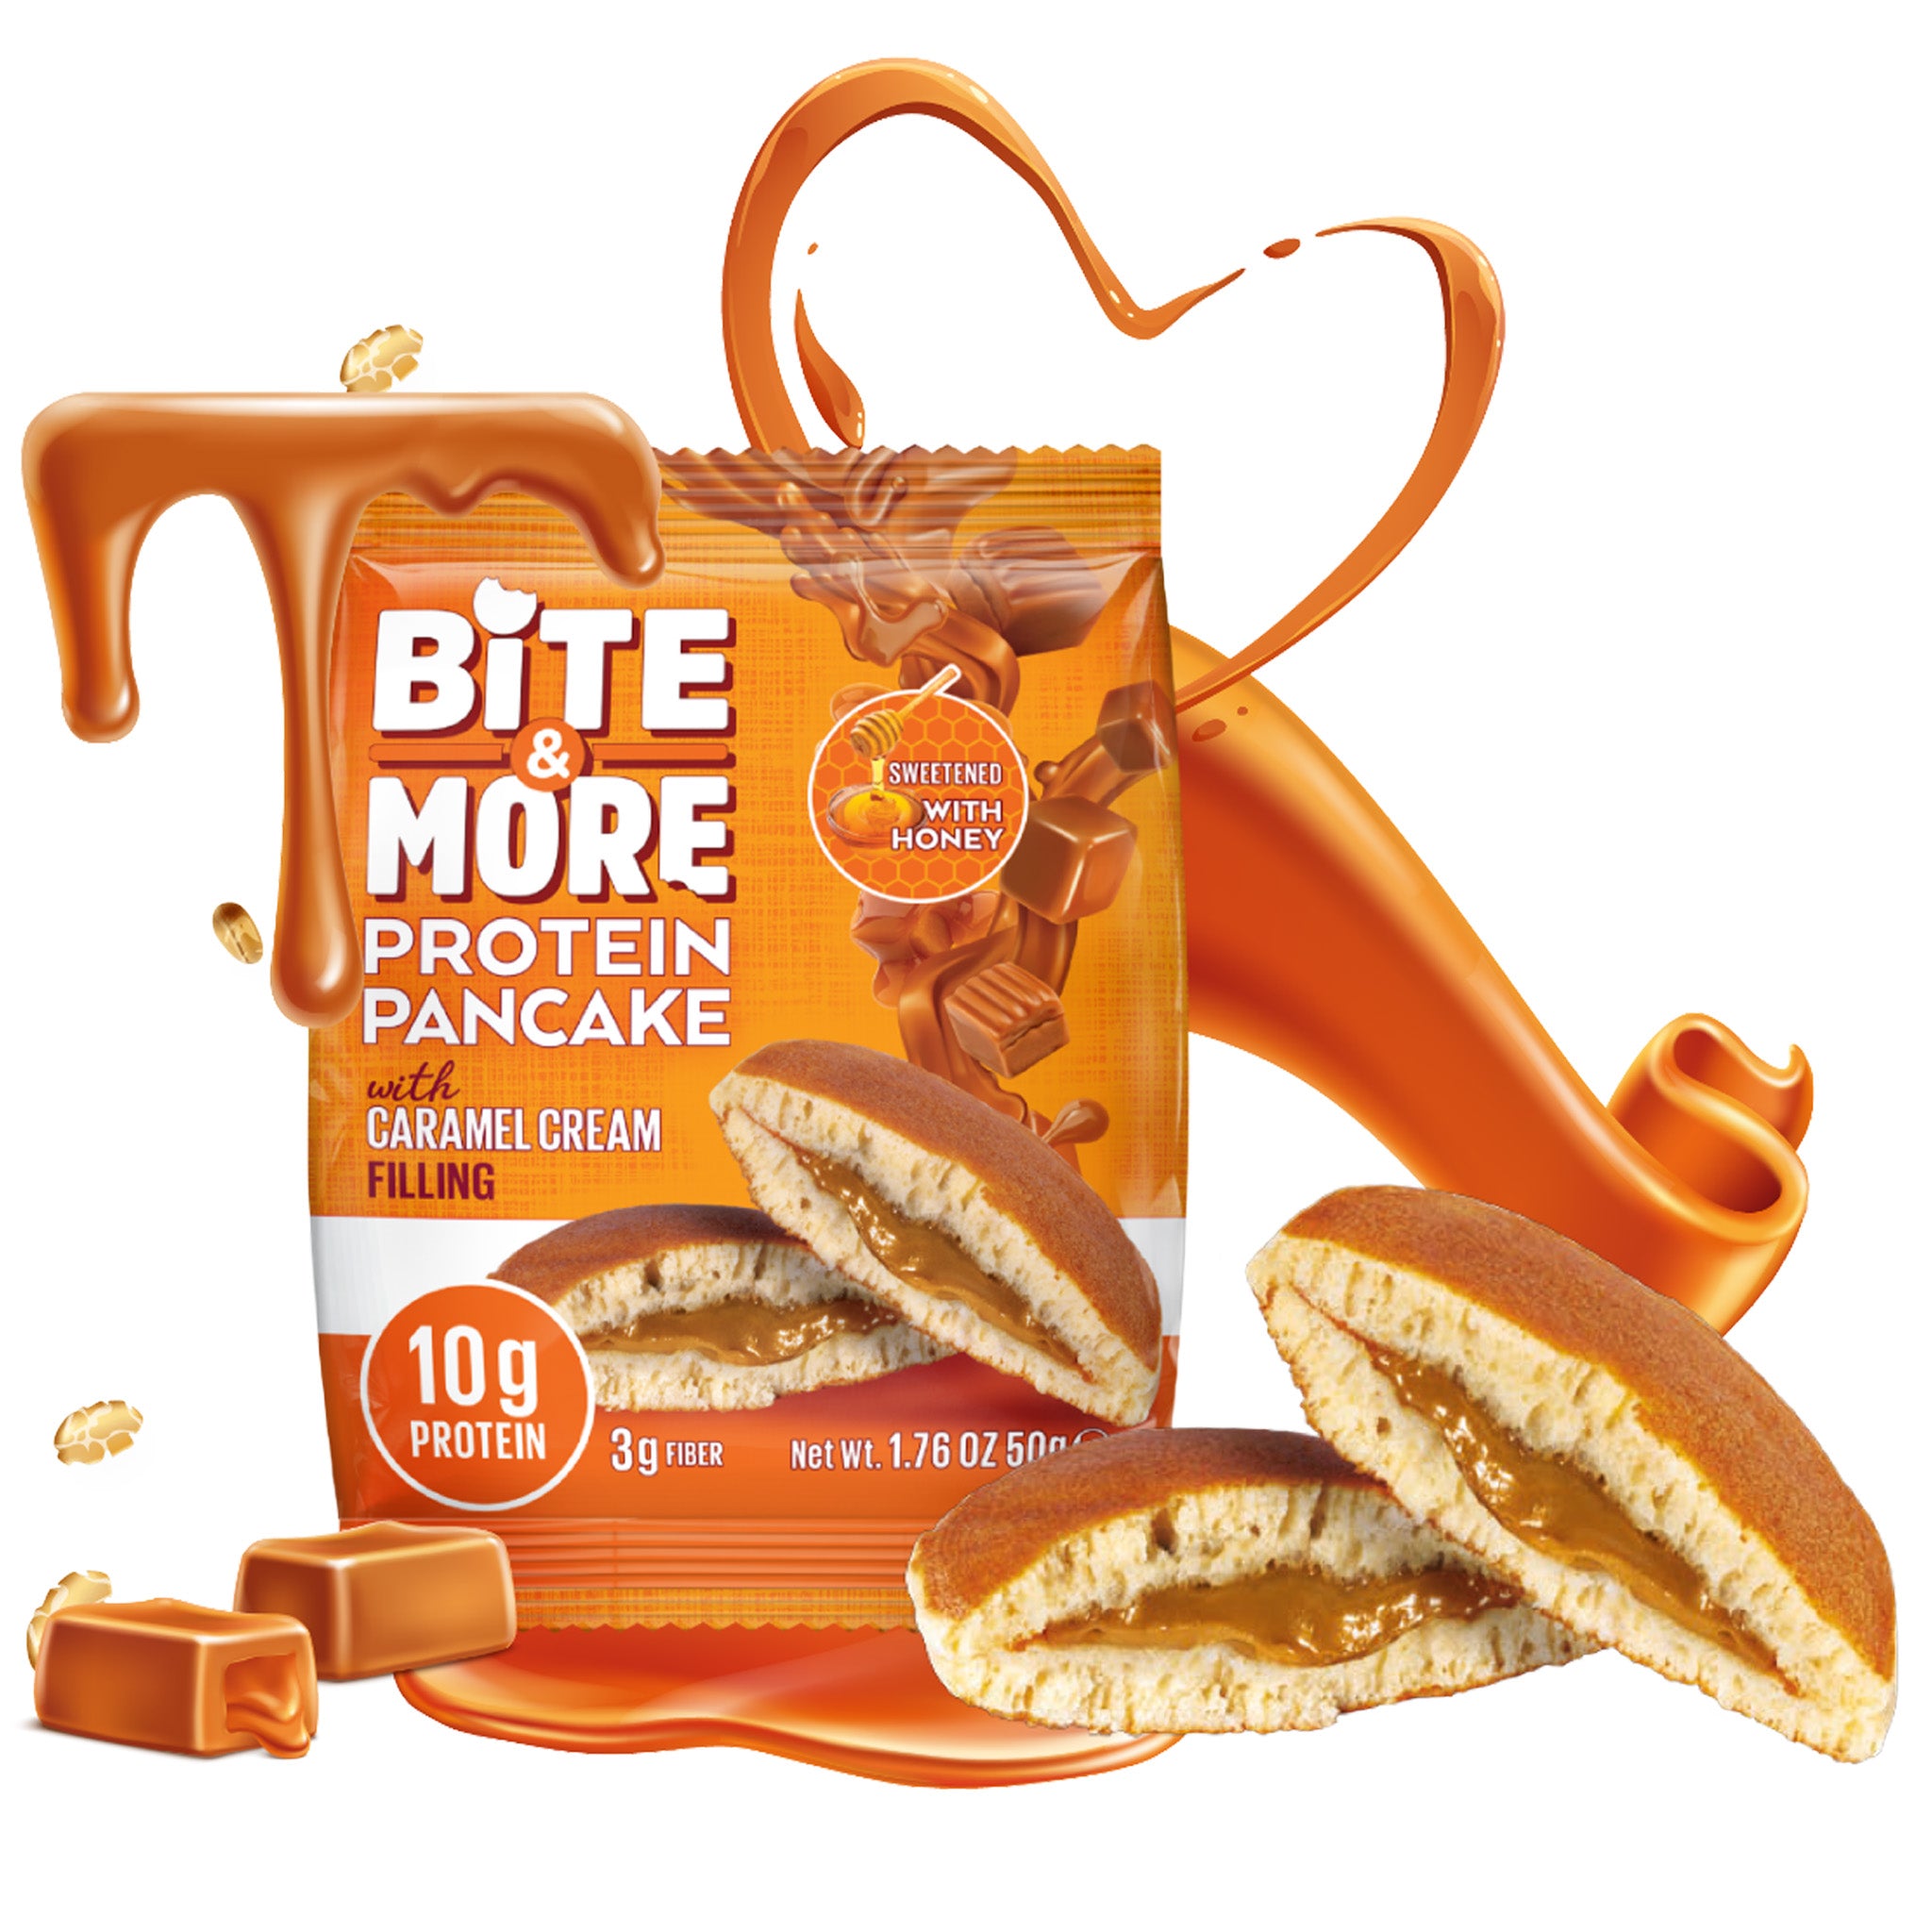 Bite & More Protein Pancake (1 Pack)